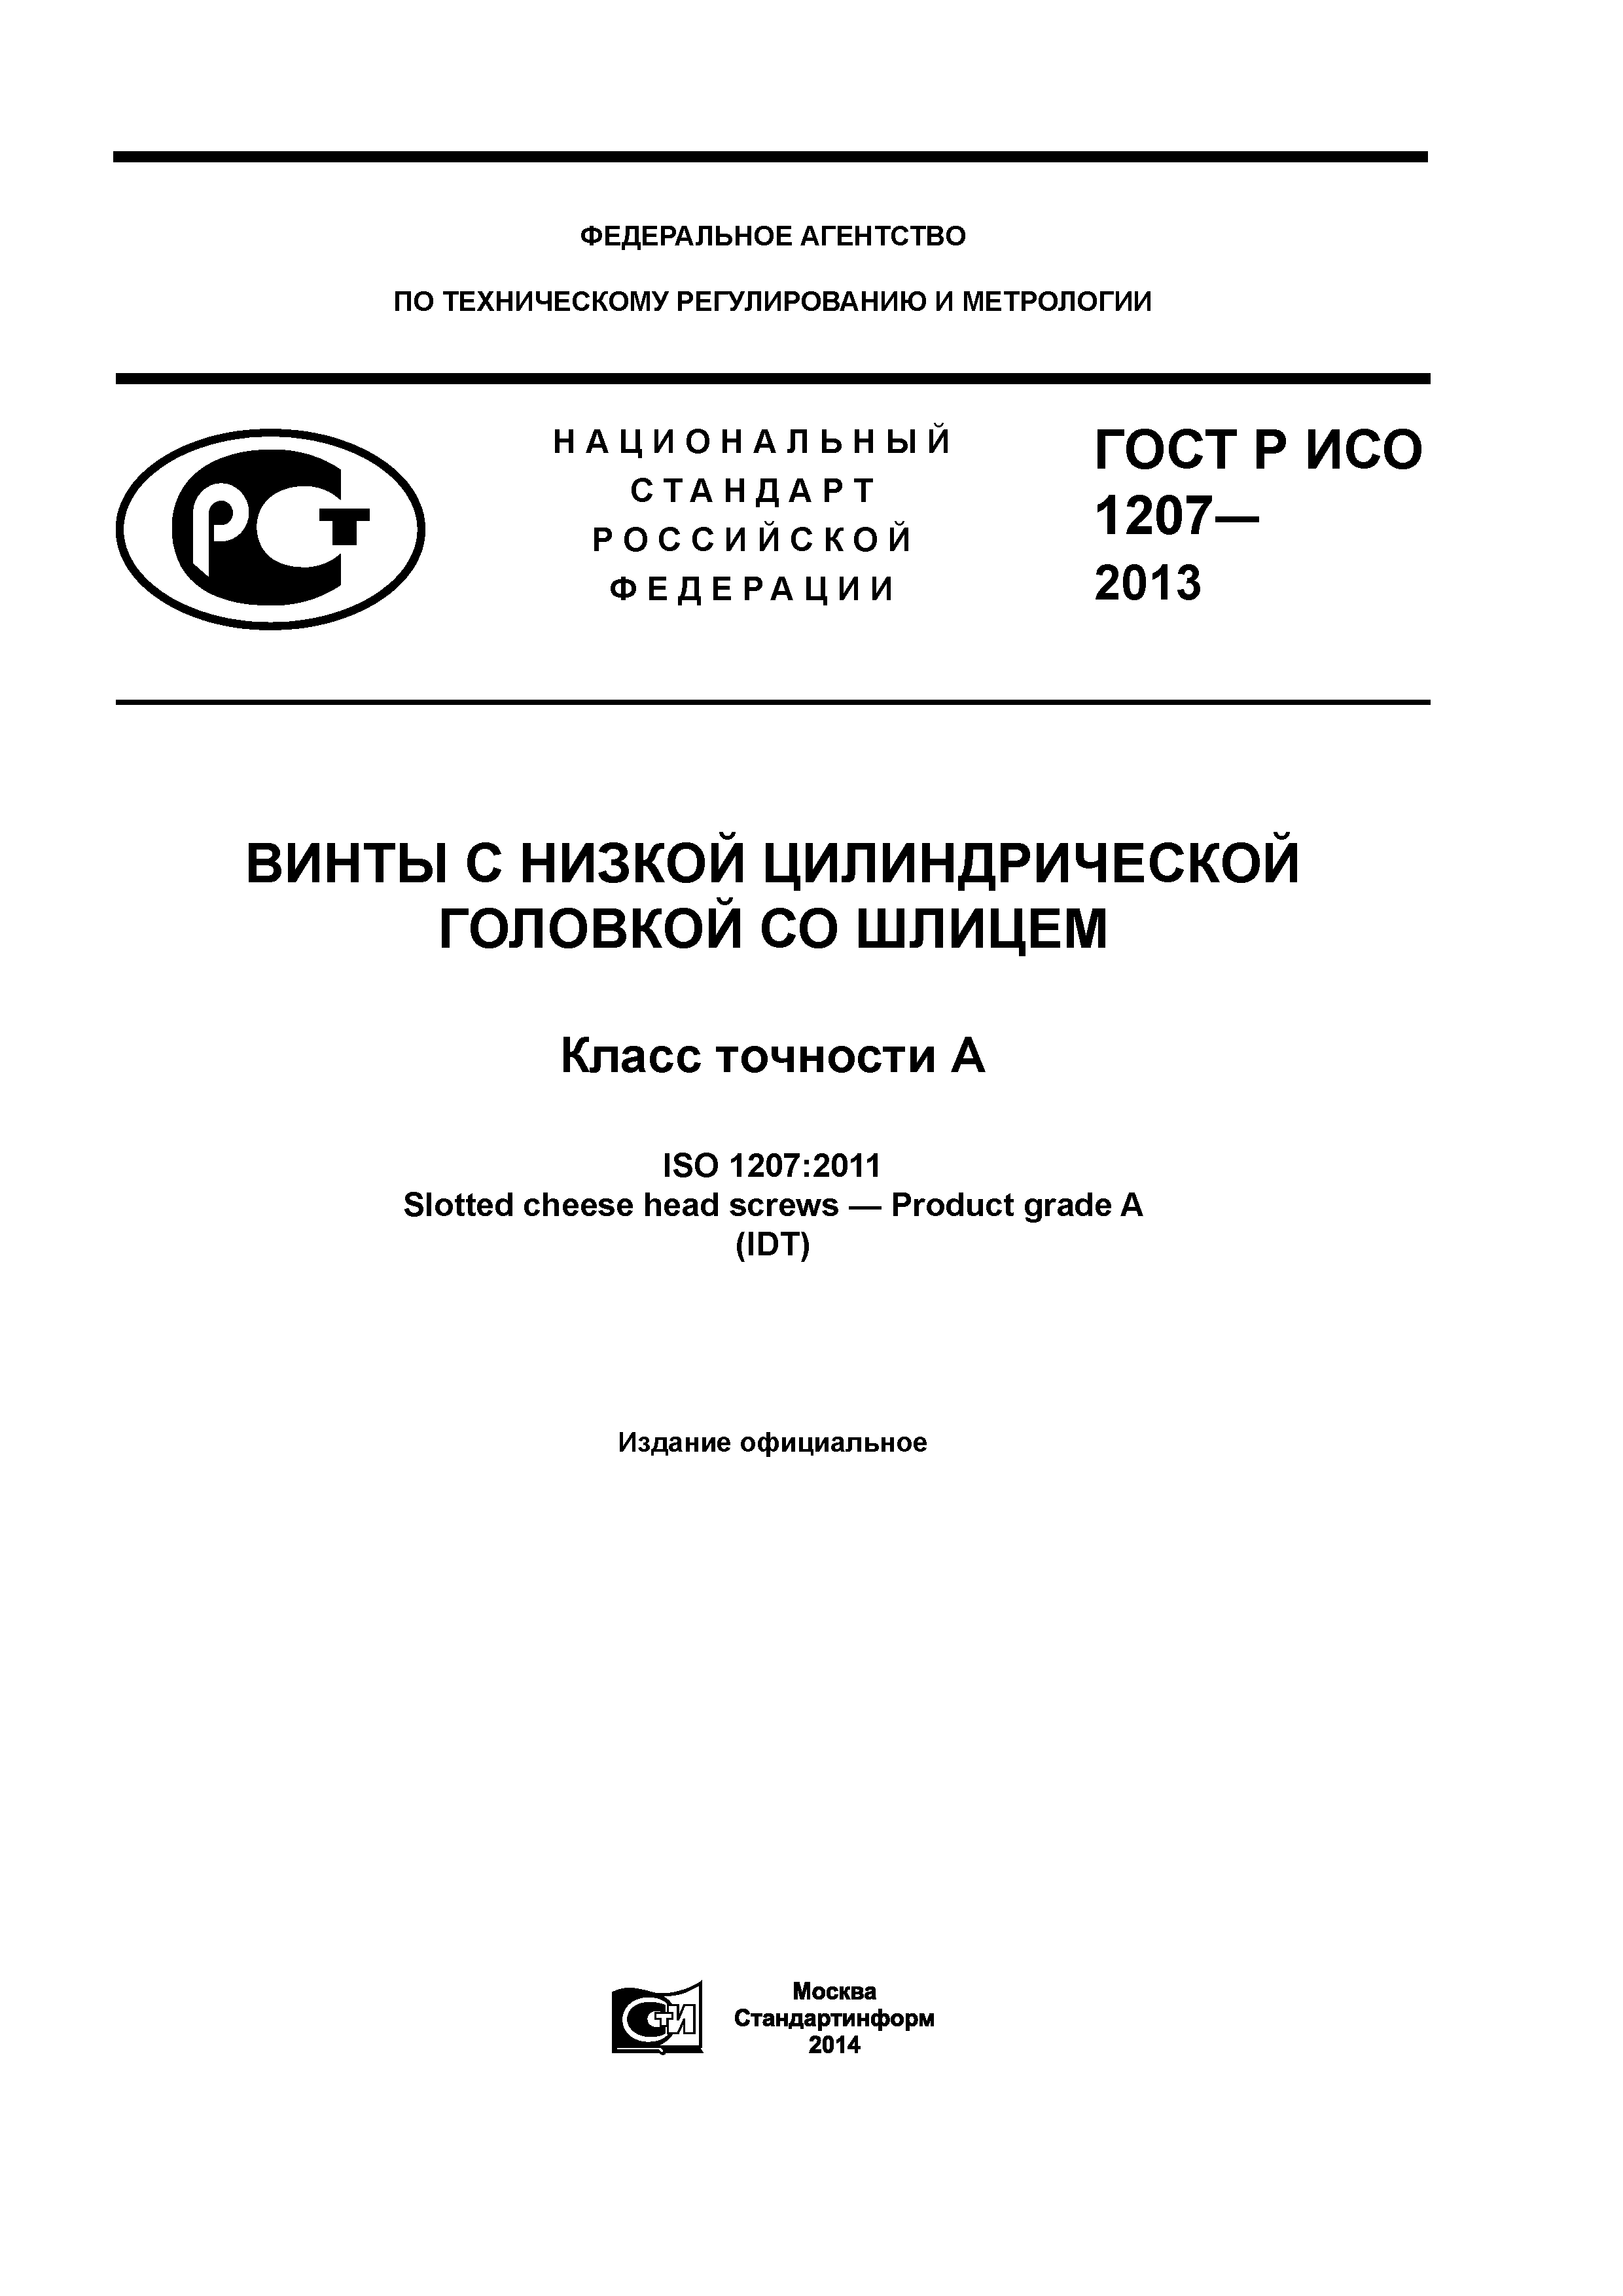 ГОСТ Р ИСО 1207-2013